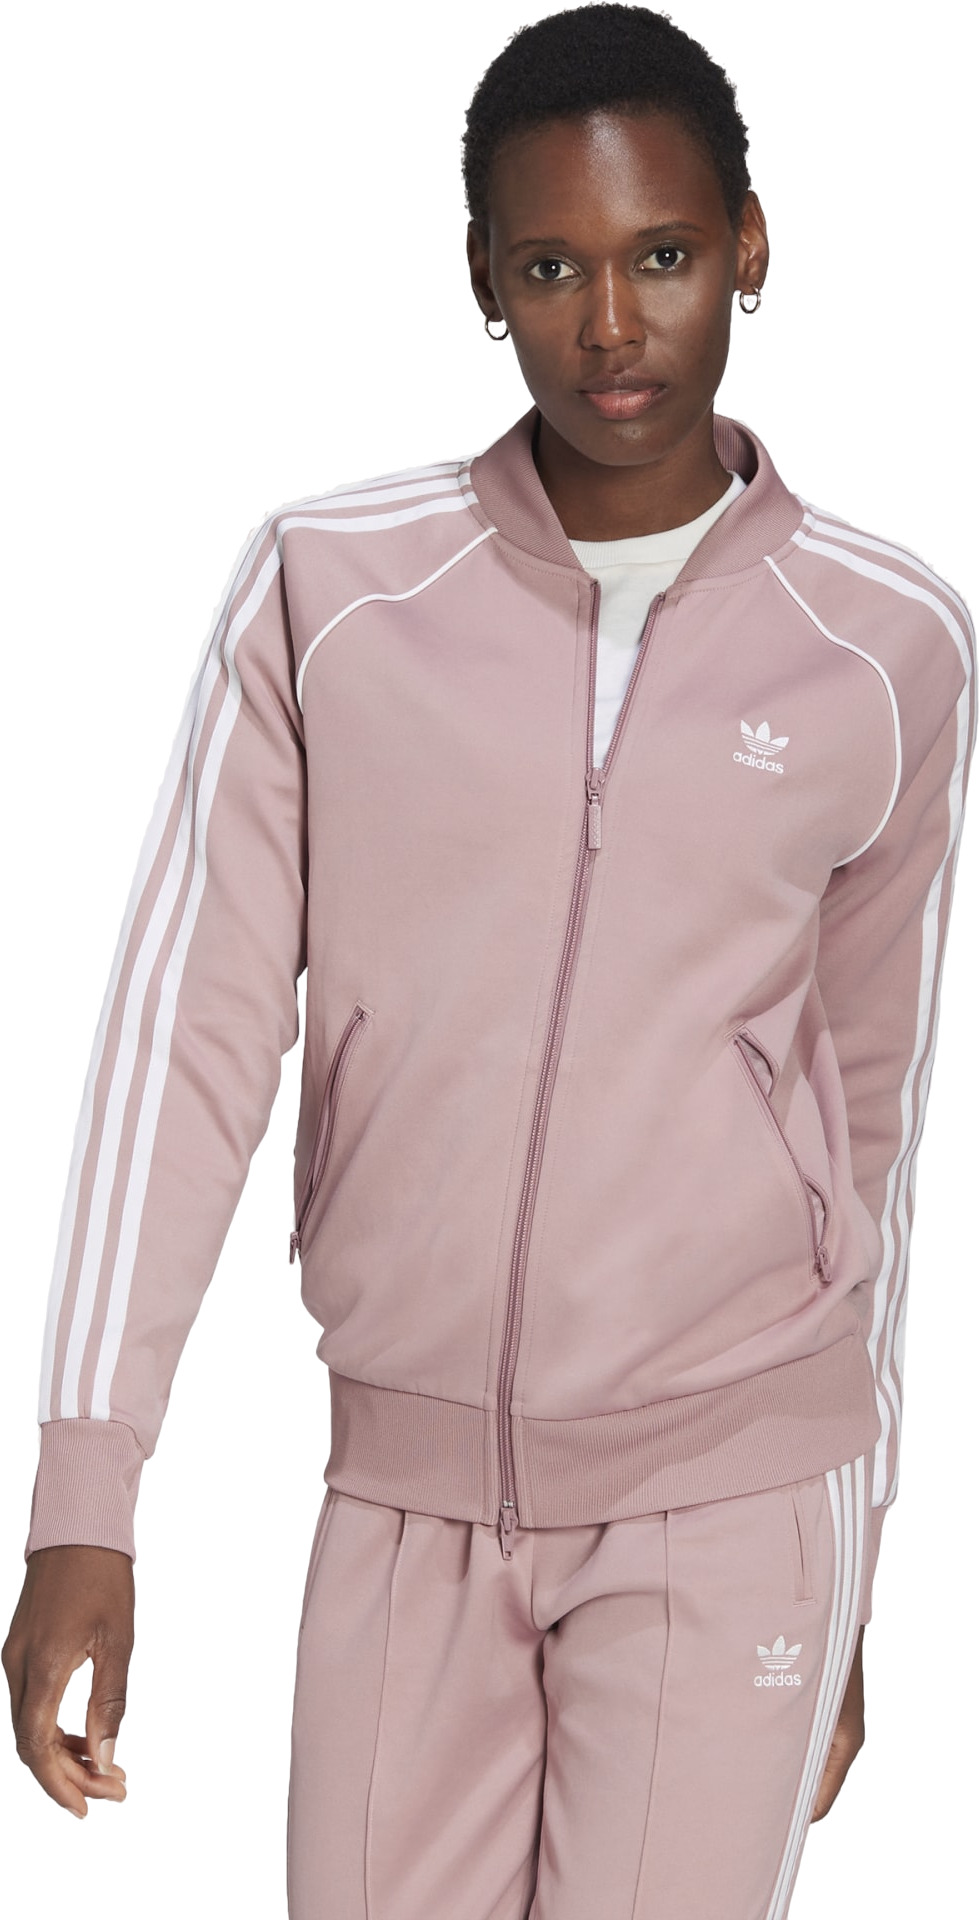 Олимпийка женская Adidas SST TRACKTOP PB розовая 42